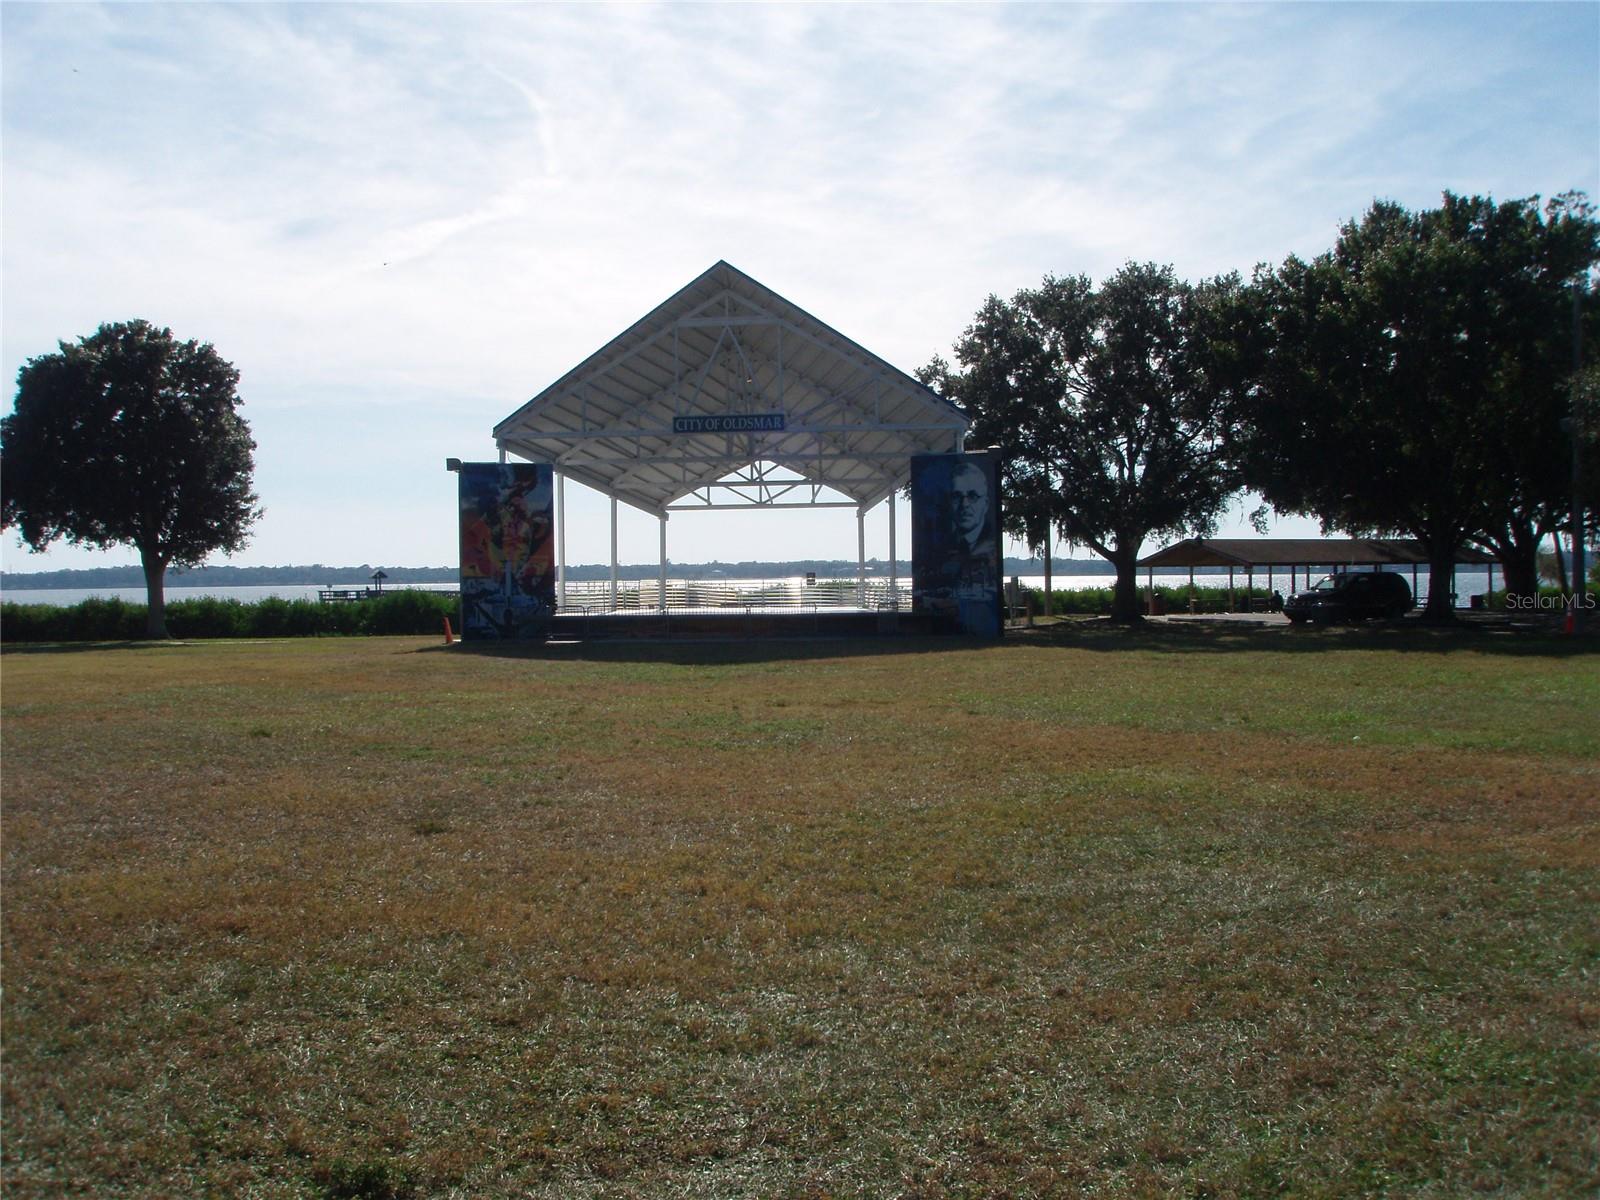 Community park pavilion